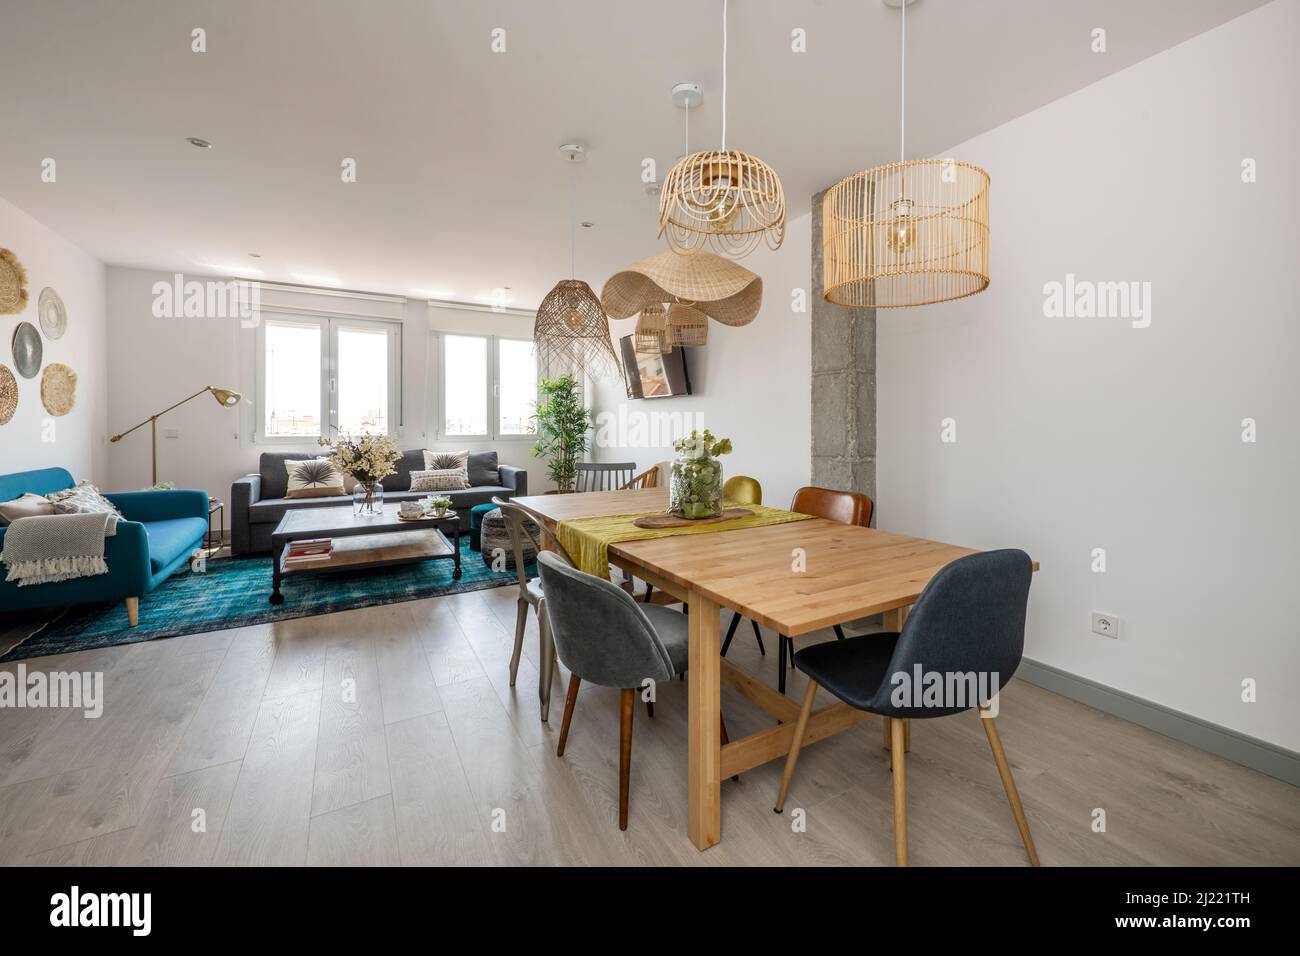 Wohnzimmer mit einem Esstisch aus Holz, gepolsterten Stühlen aus Holz und Metall und Korblampen, hellen Holzböden und einem blauen Sofa mit Teppich Stockfoto